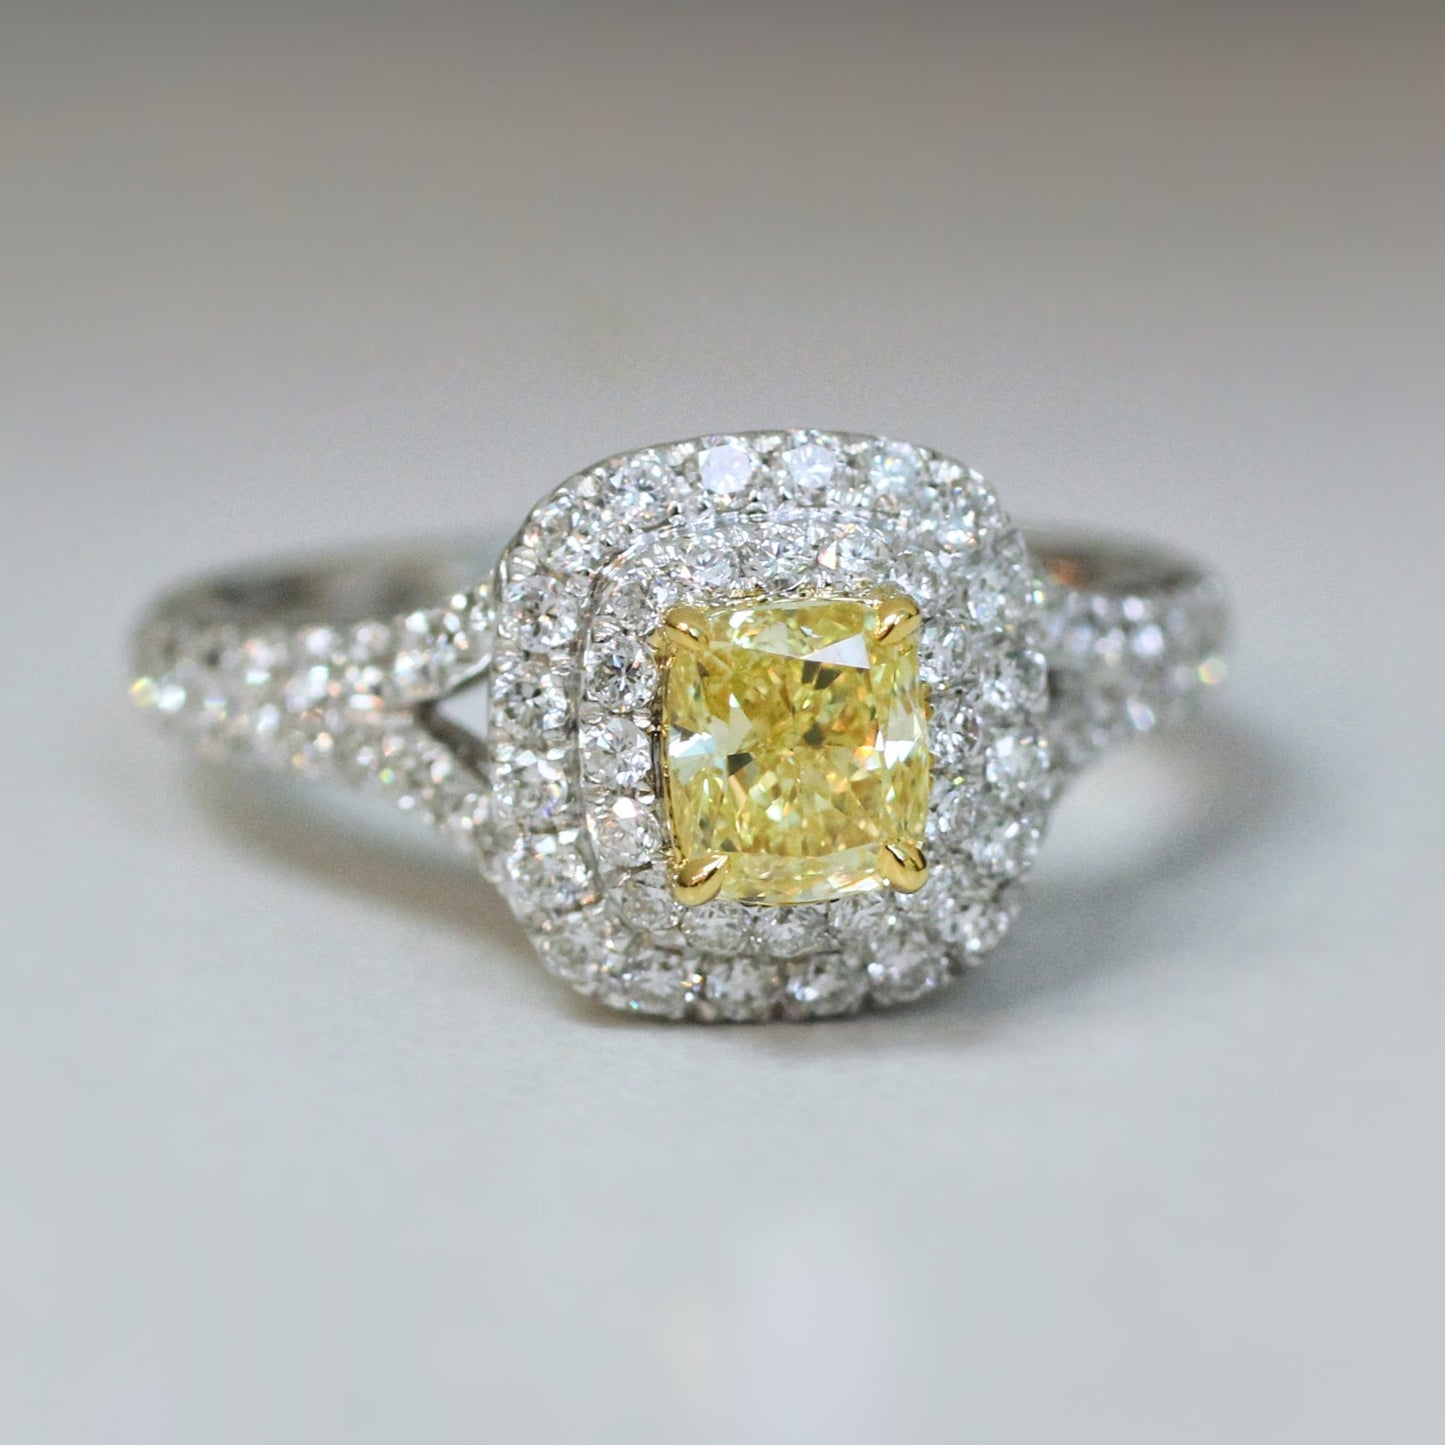 Fancy Intense yellow Diamond Ring GIA 0.56carat